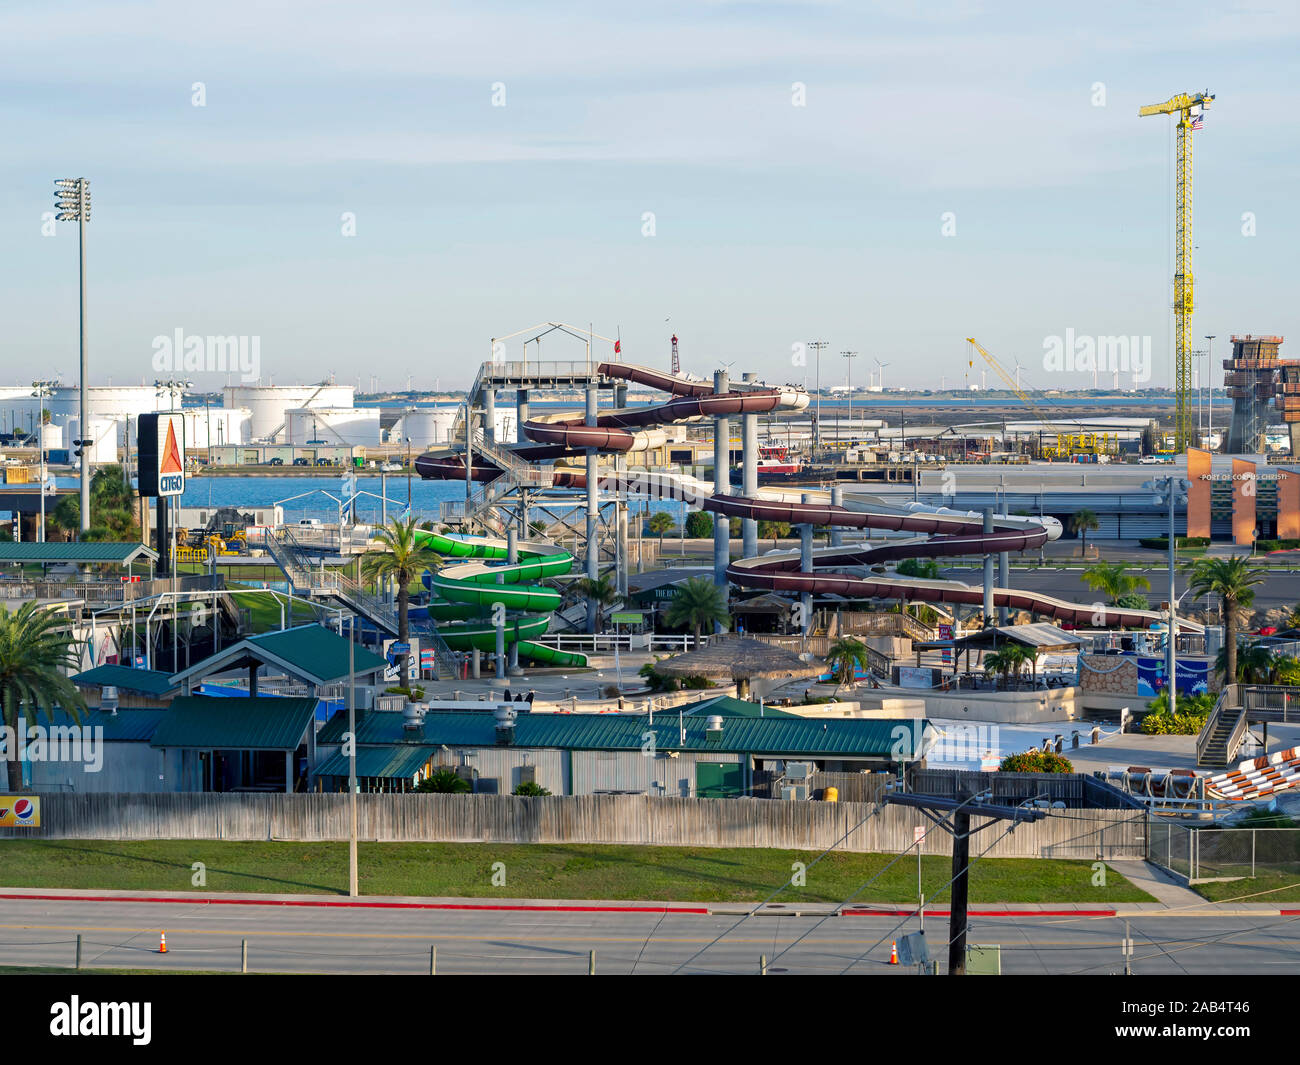 Erhöhten Blick auf Wasserrutschen bei Hurricane Alley Water Park in Corpus Christi, Texas USA. Hafen von Corpus Christi in den Hintergrund. Stockfoto